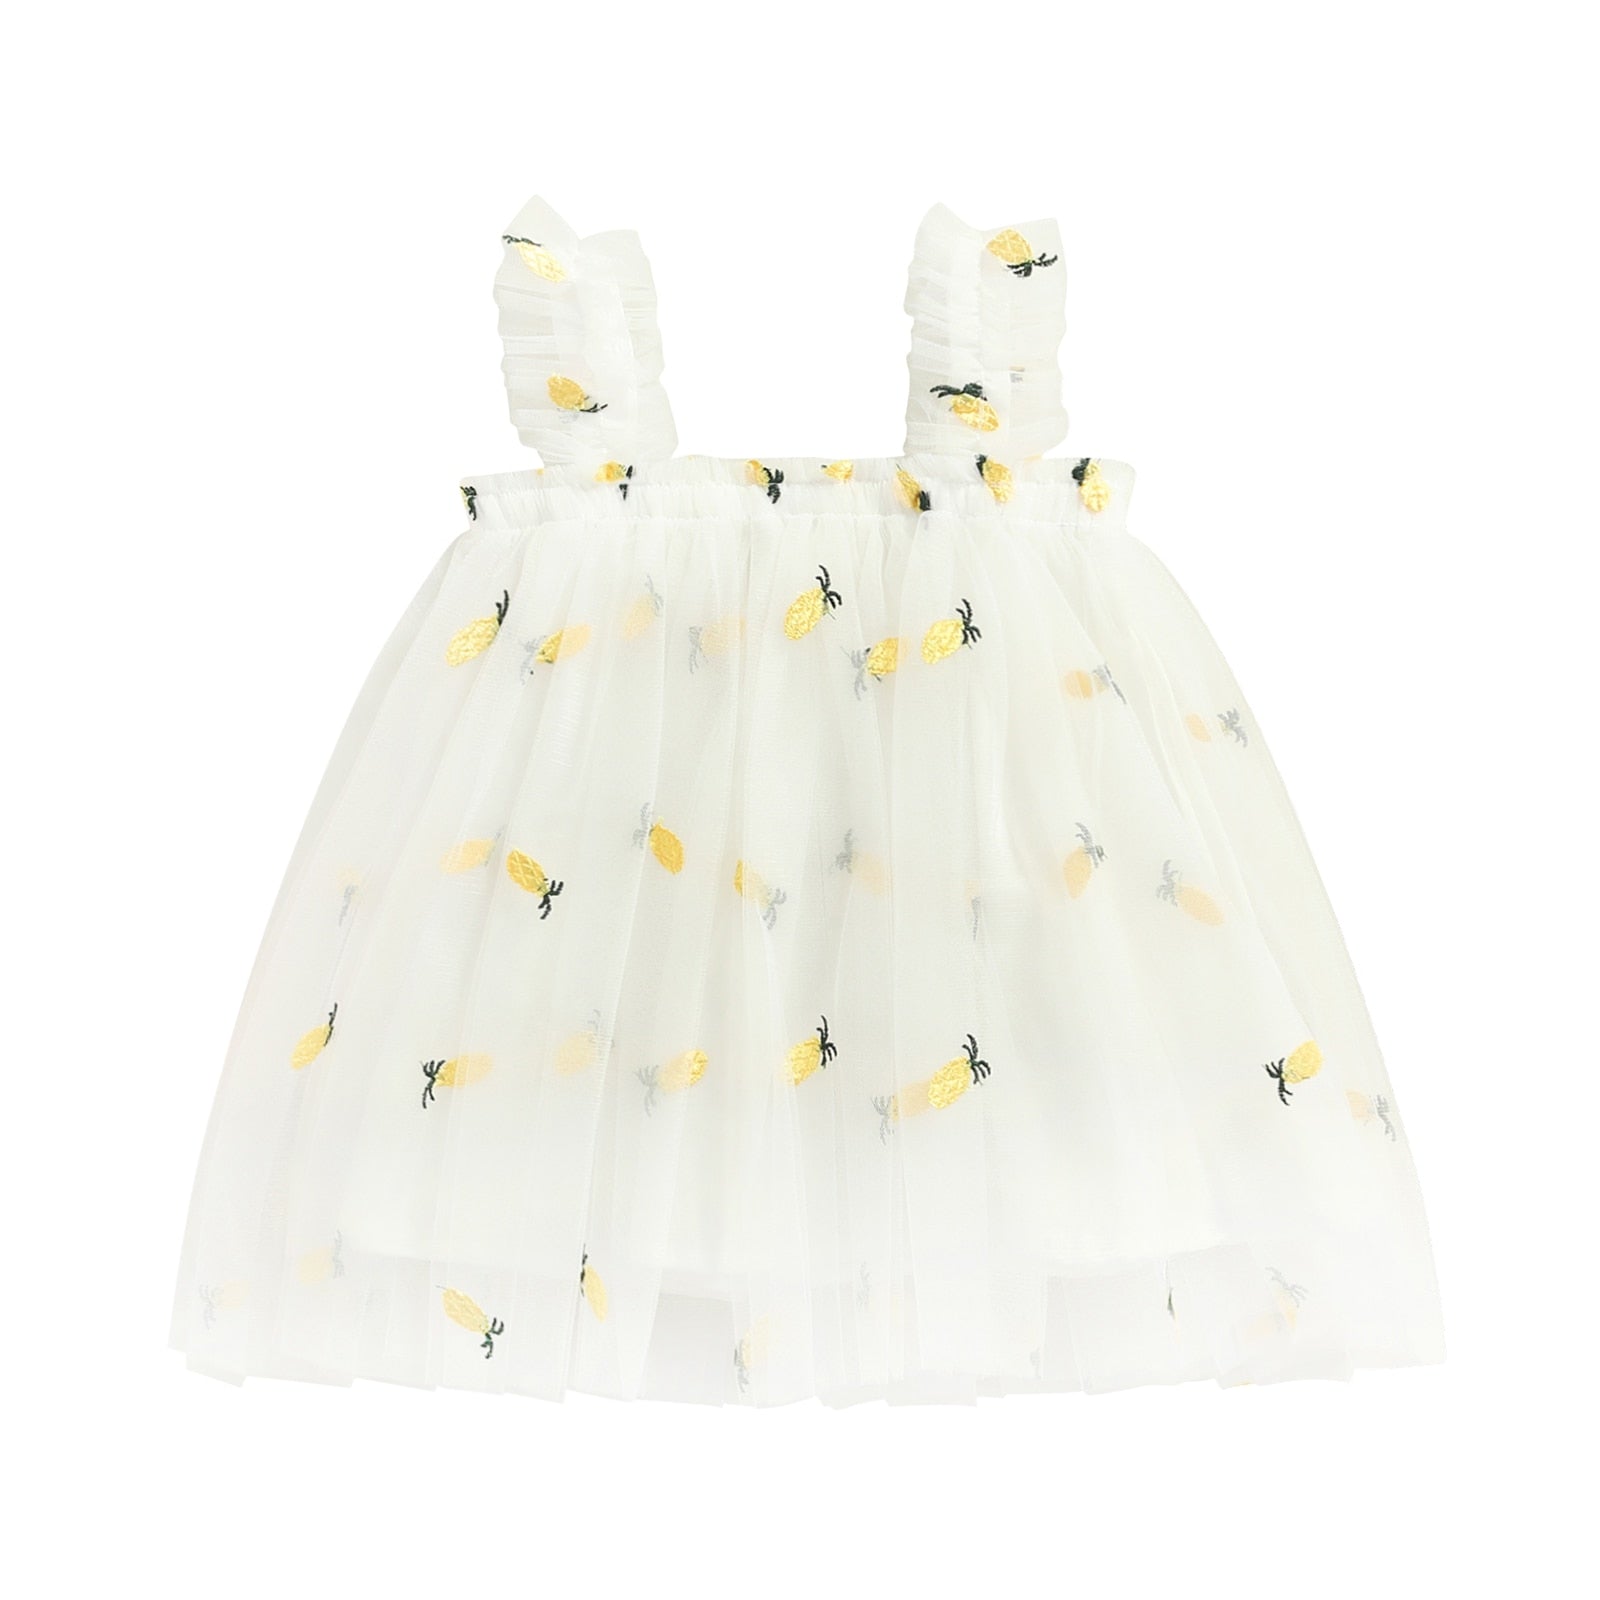 Vestido Infantil Tule Estampas vestido Loja Click Certo Abacaxi Branco 2-3 anos 48cm 